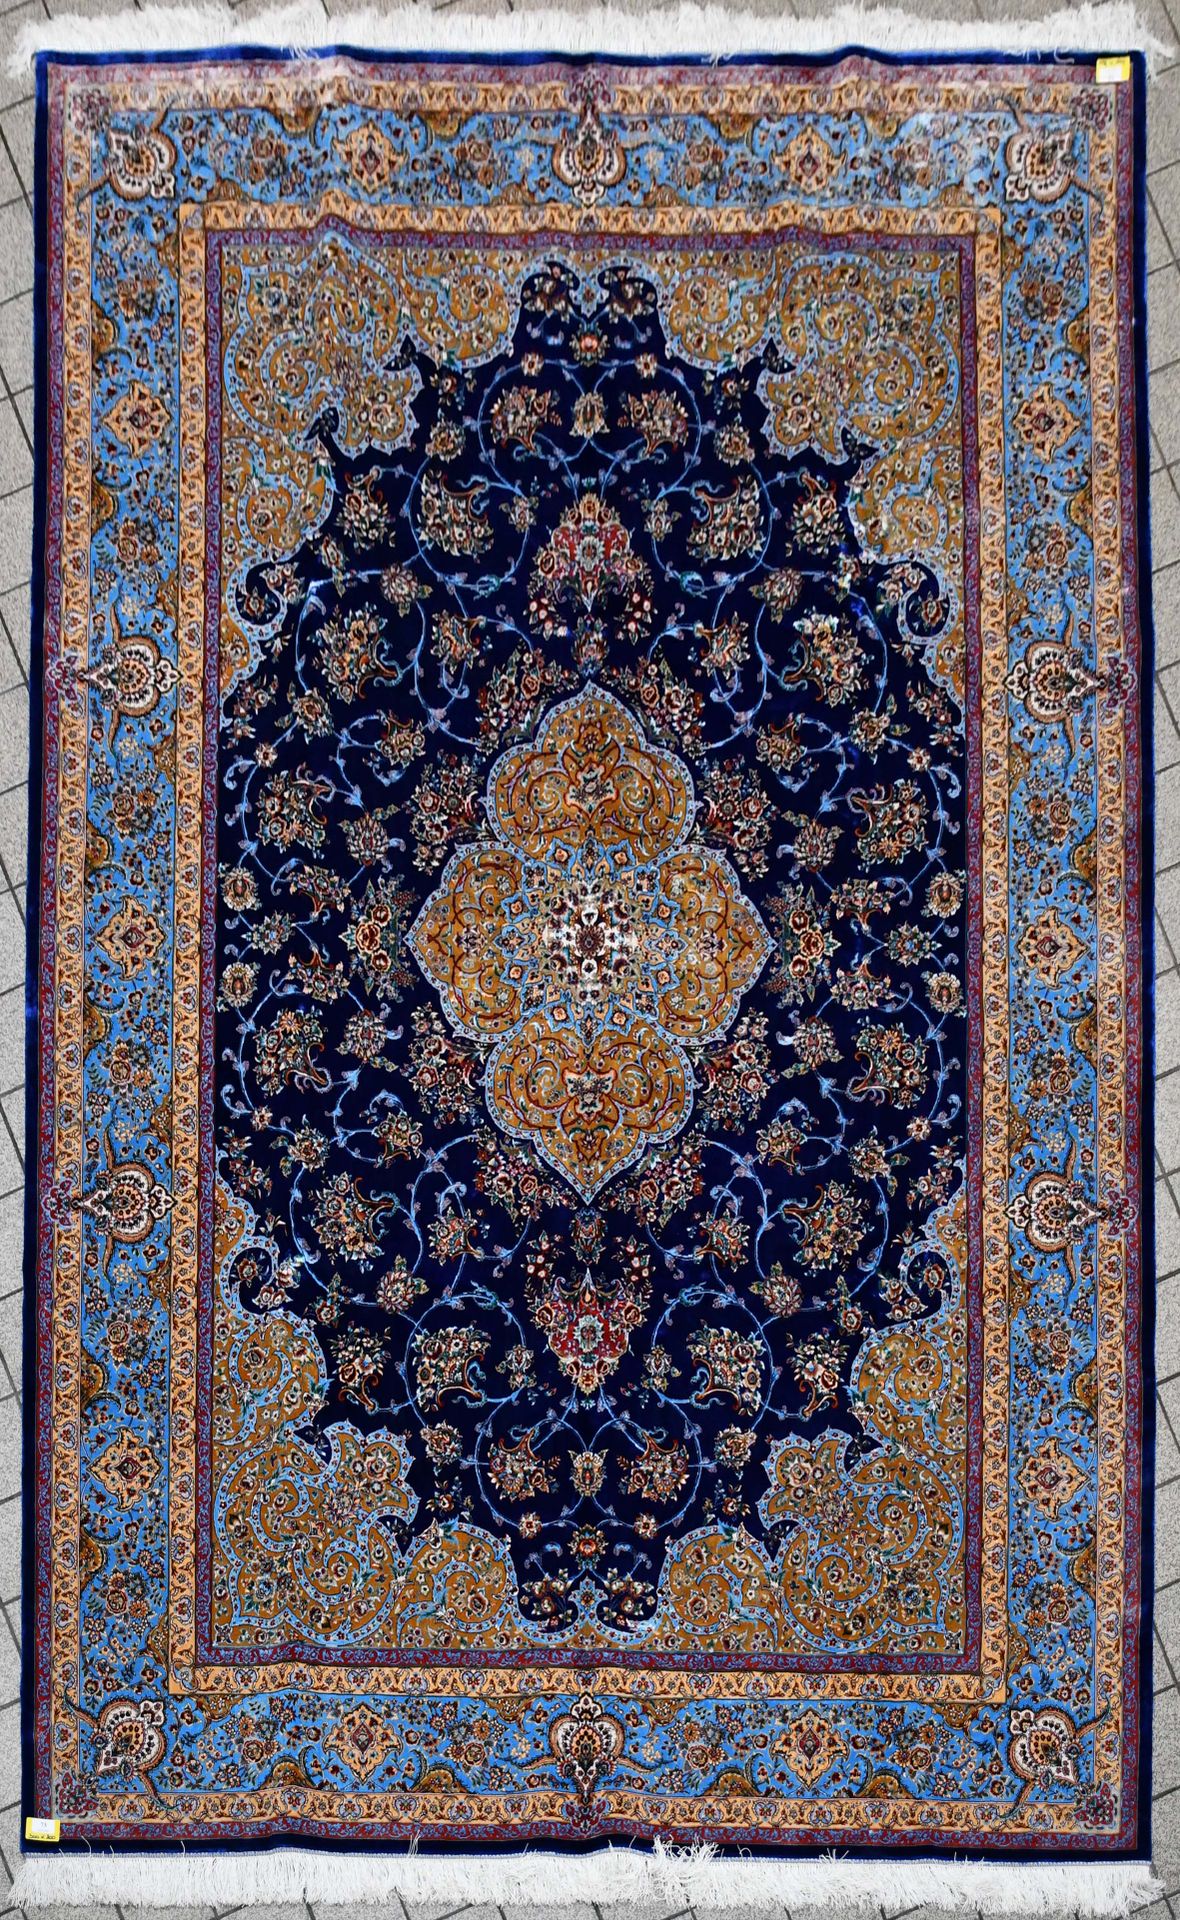 Null Teppich

Halbmechanischer Teppich aus Seide.

Größe: 300 cm x 200 cm.